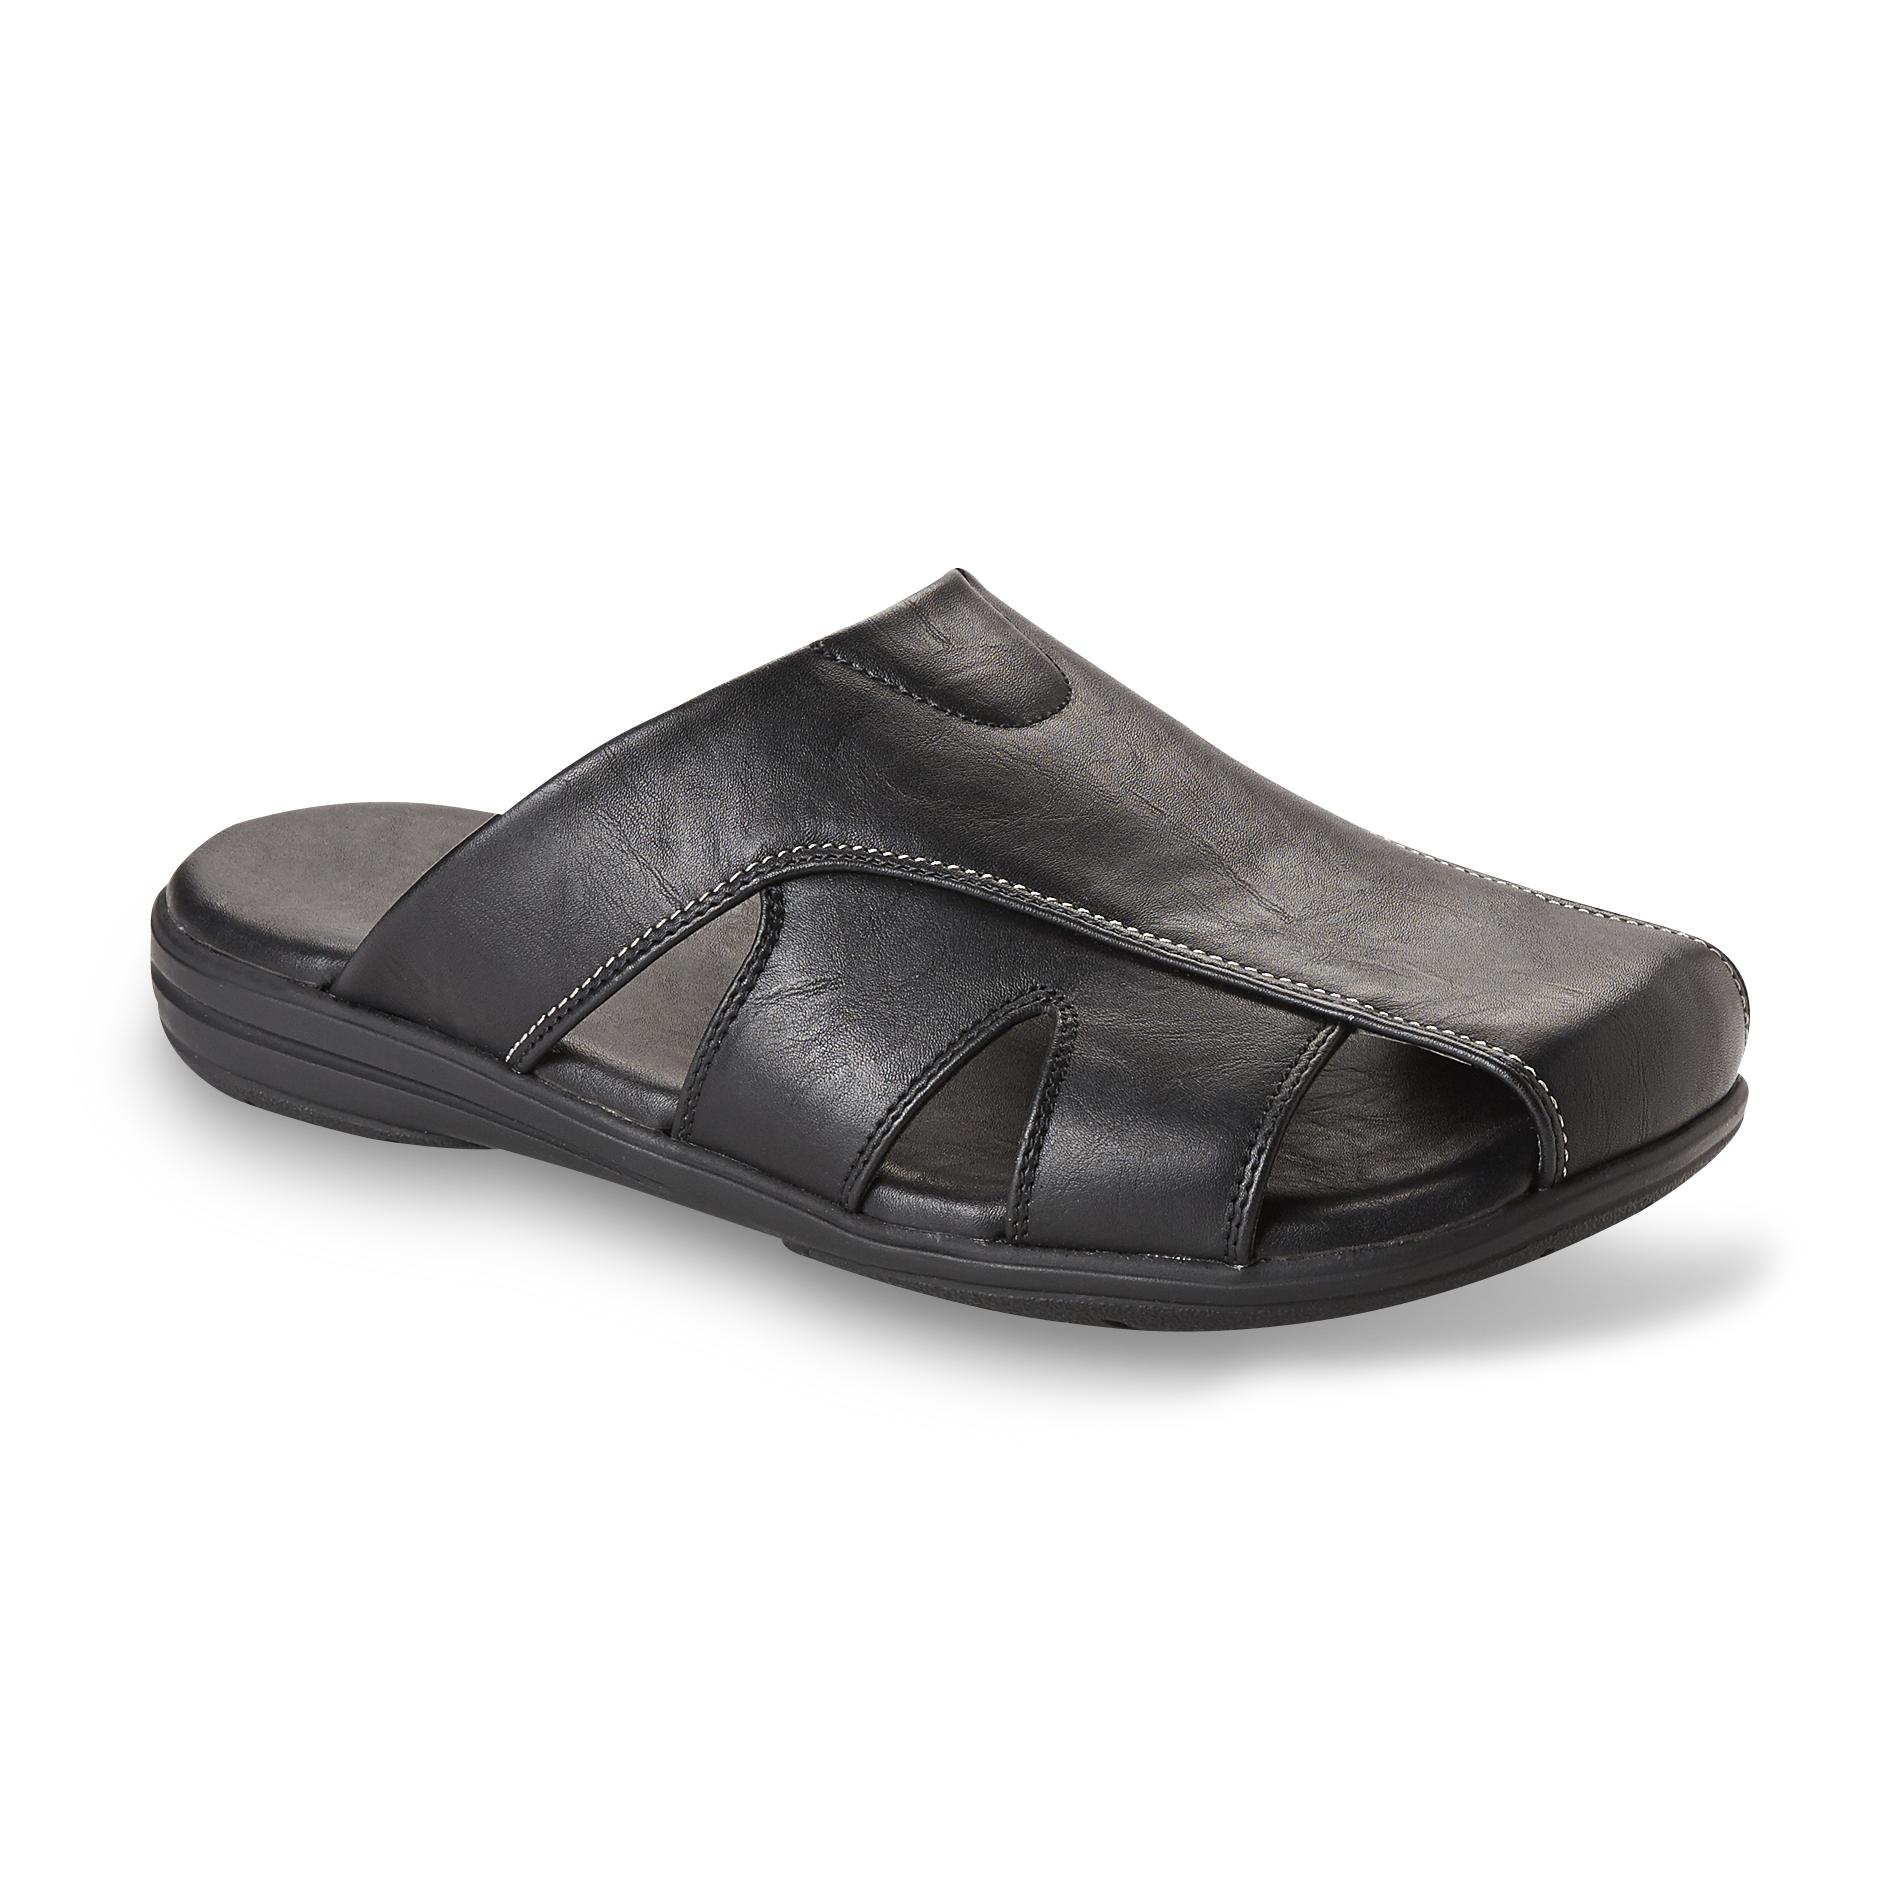 black flip flops with heel